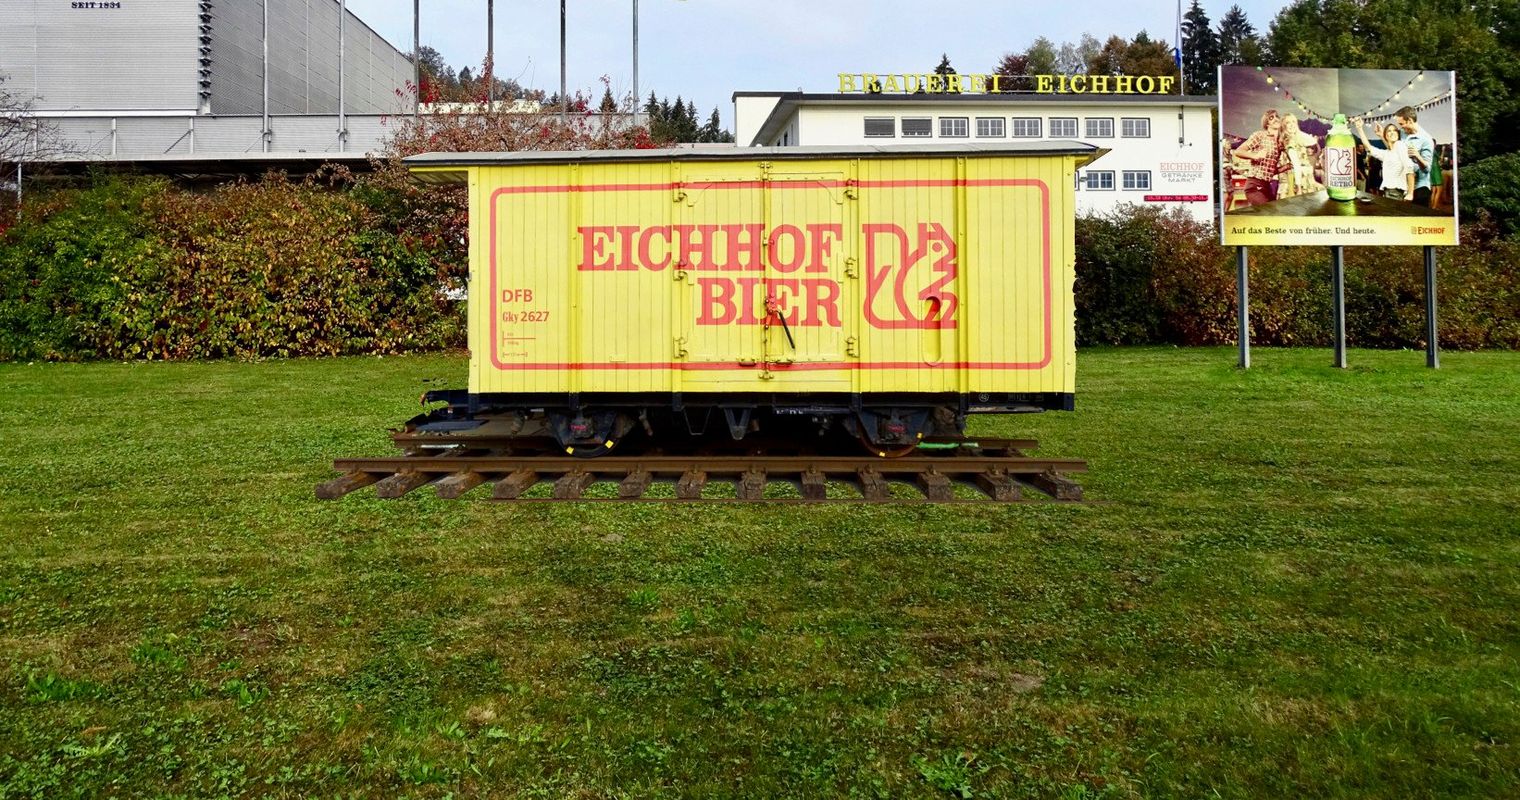 Warum bald ein alter Eisenbahnwagen vor der Brauerei steht